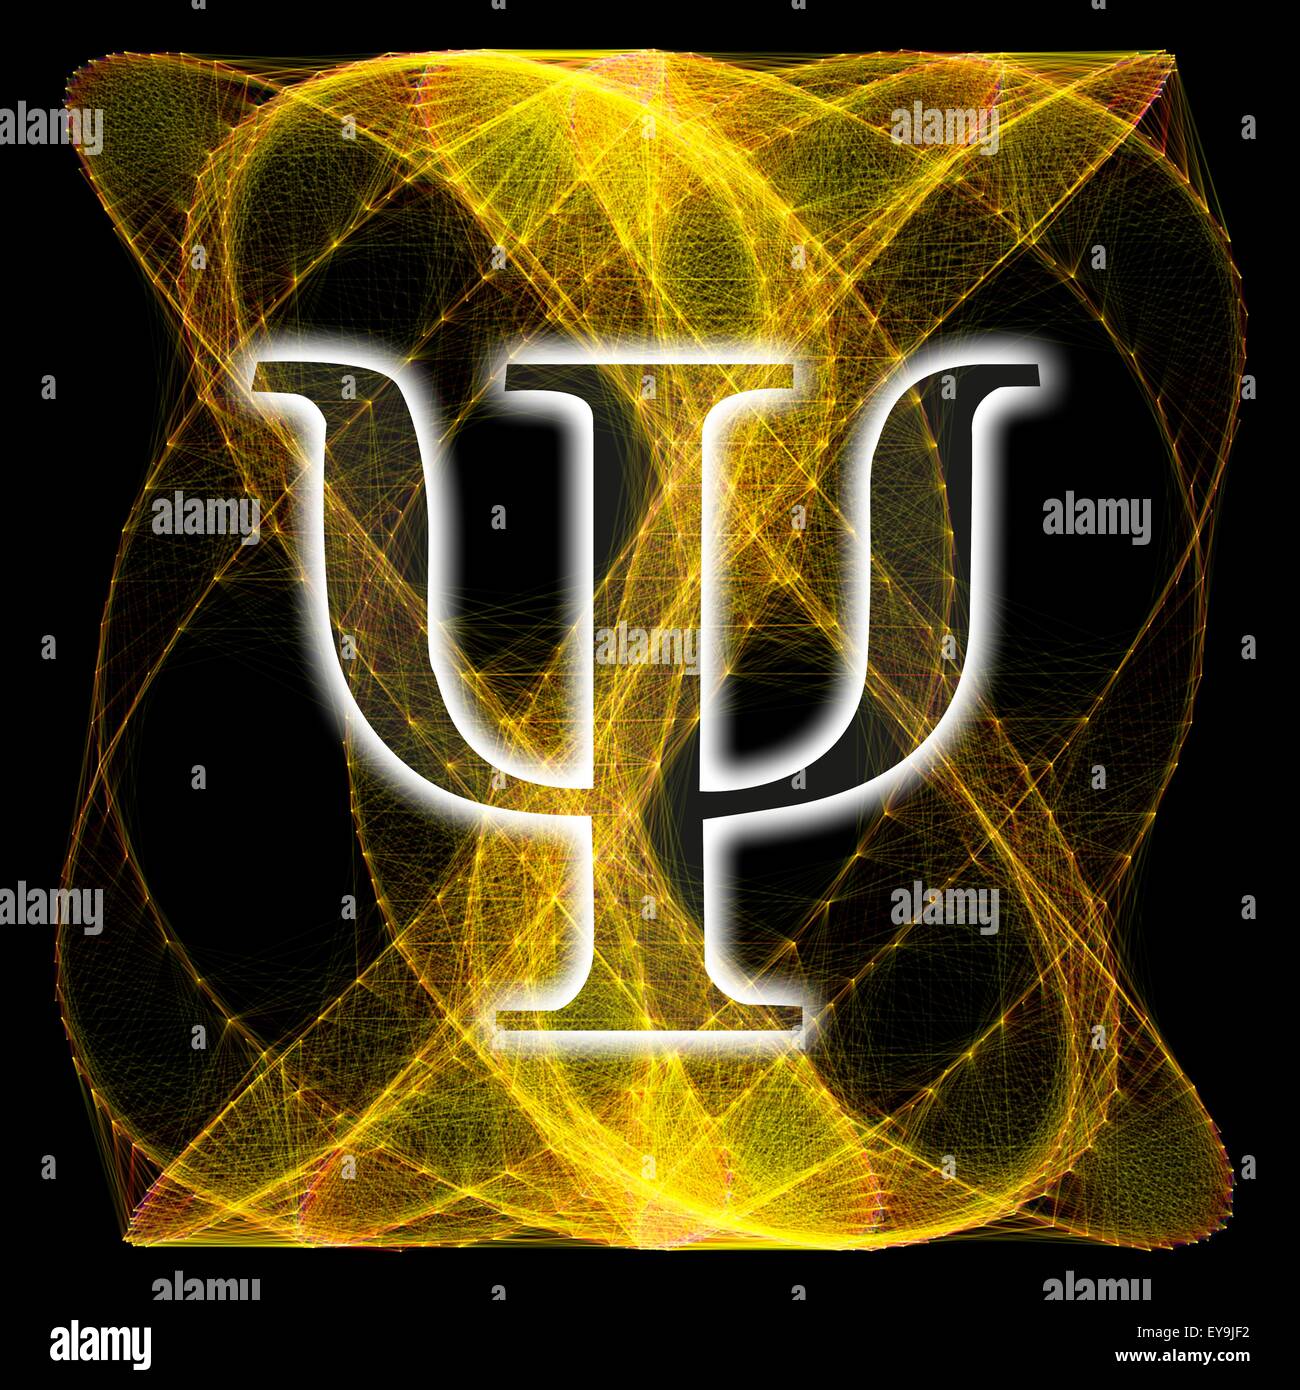 Computer-Artwork von griechischen Buchstaben Psi und einer Lissajous-Figur im Hintergrund. Die Buchstaben Psi wird häufig in der Physik verwendet. Stockfoto